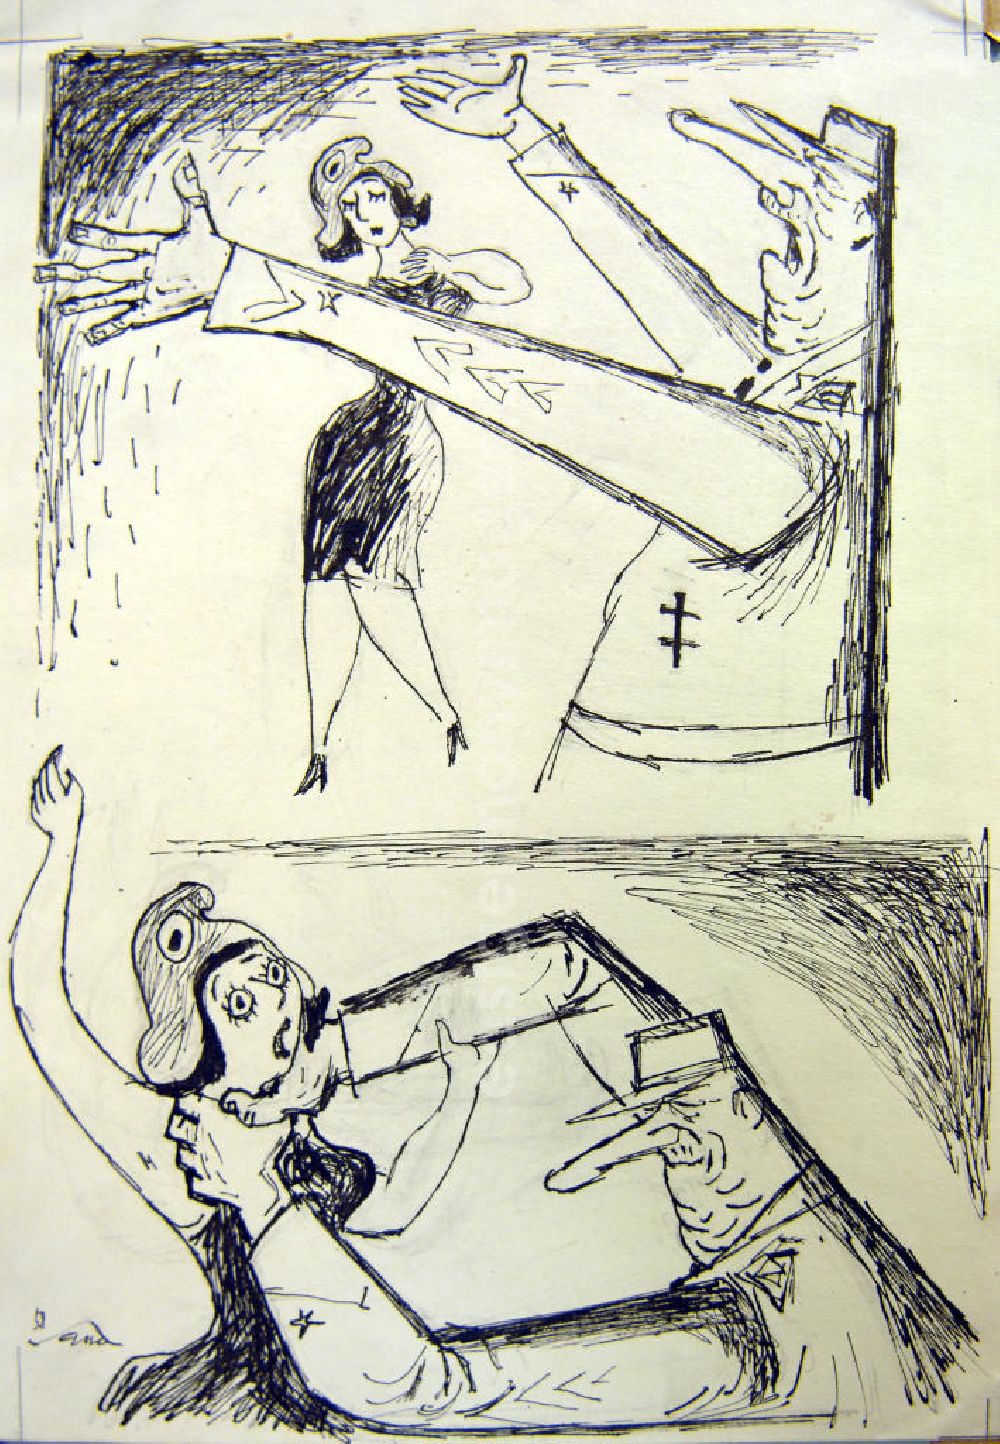 GDR image archive: Berlin - Zeichnung von Herbert Sandberg aus dem Jahr 1958, 21,0x30,